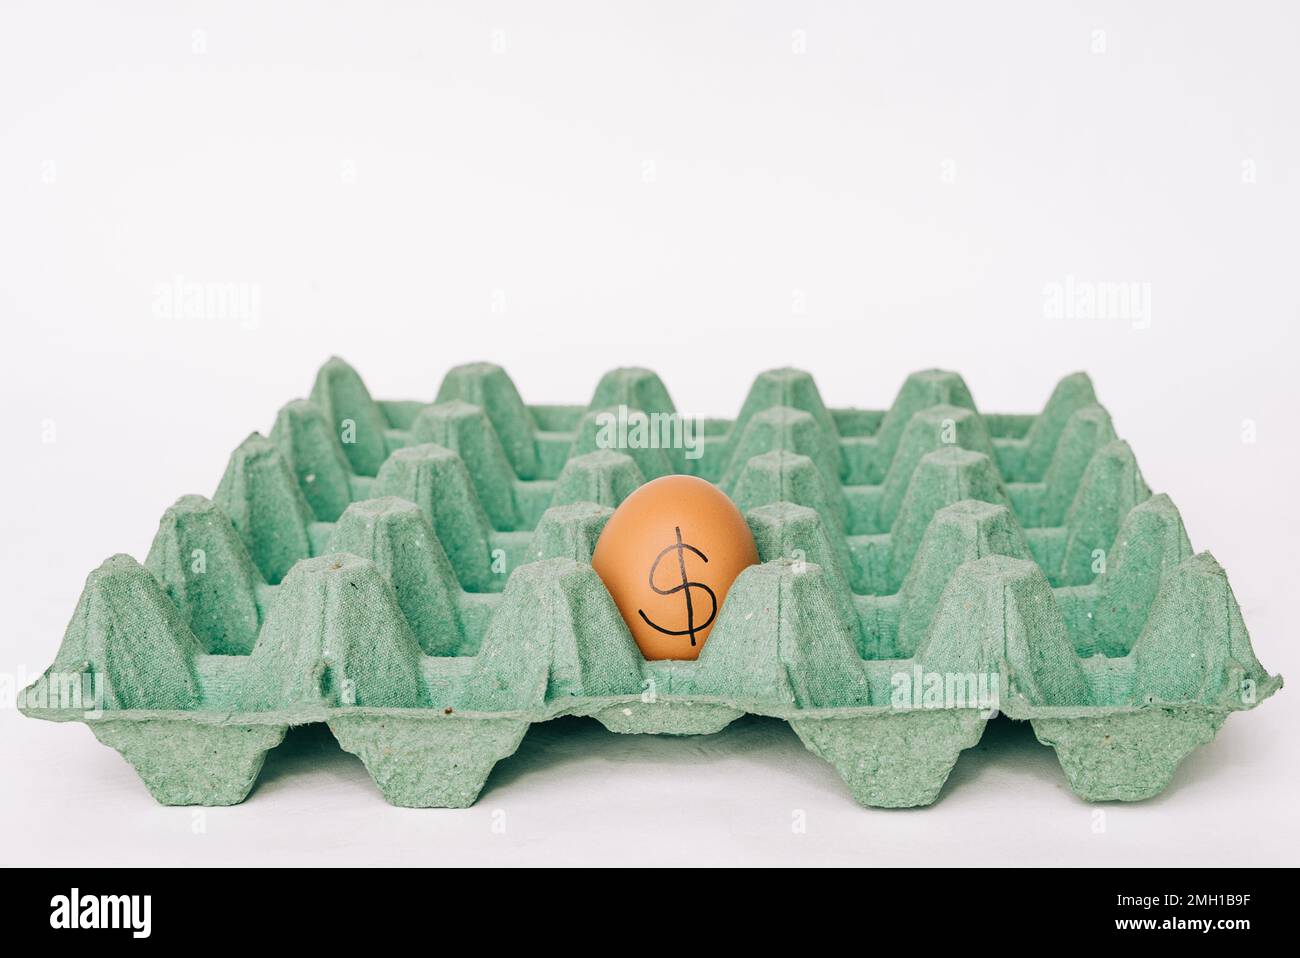 Konzeptionelles Bild eines Eies mit einem Dollar darauf in einem leeren Eierkarton. Konzept von teuren Lebensmittelpreisen und Lebensmittelknappheit. Stockfoto